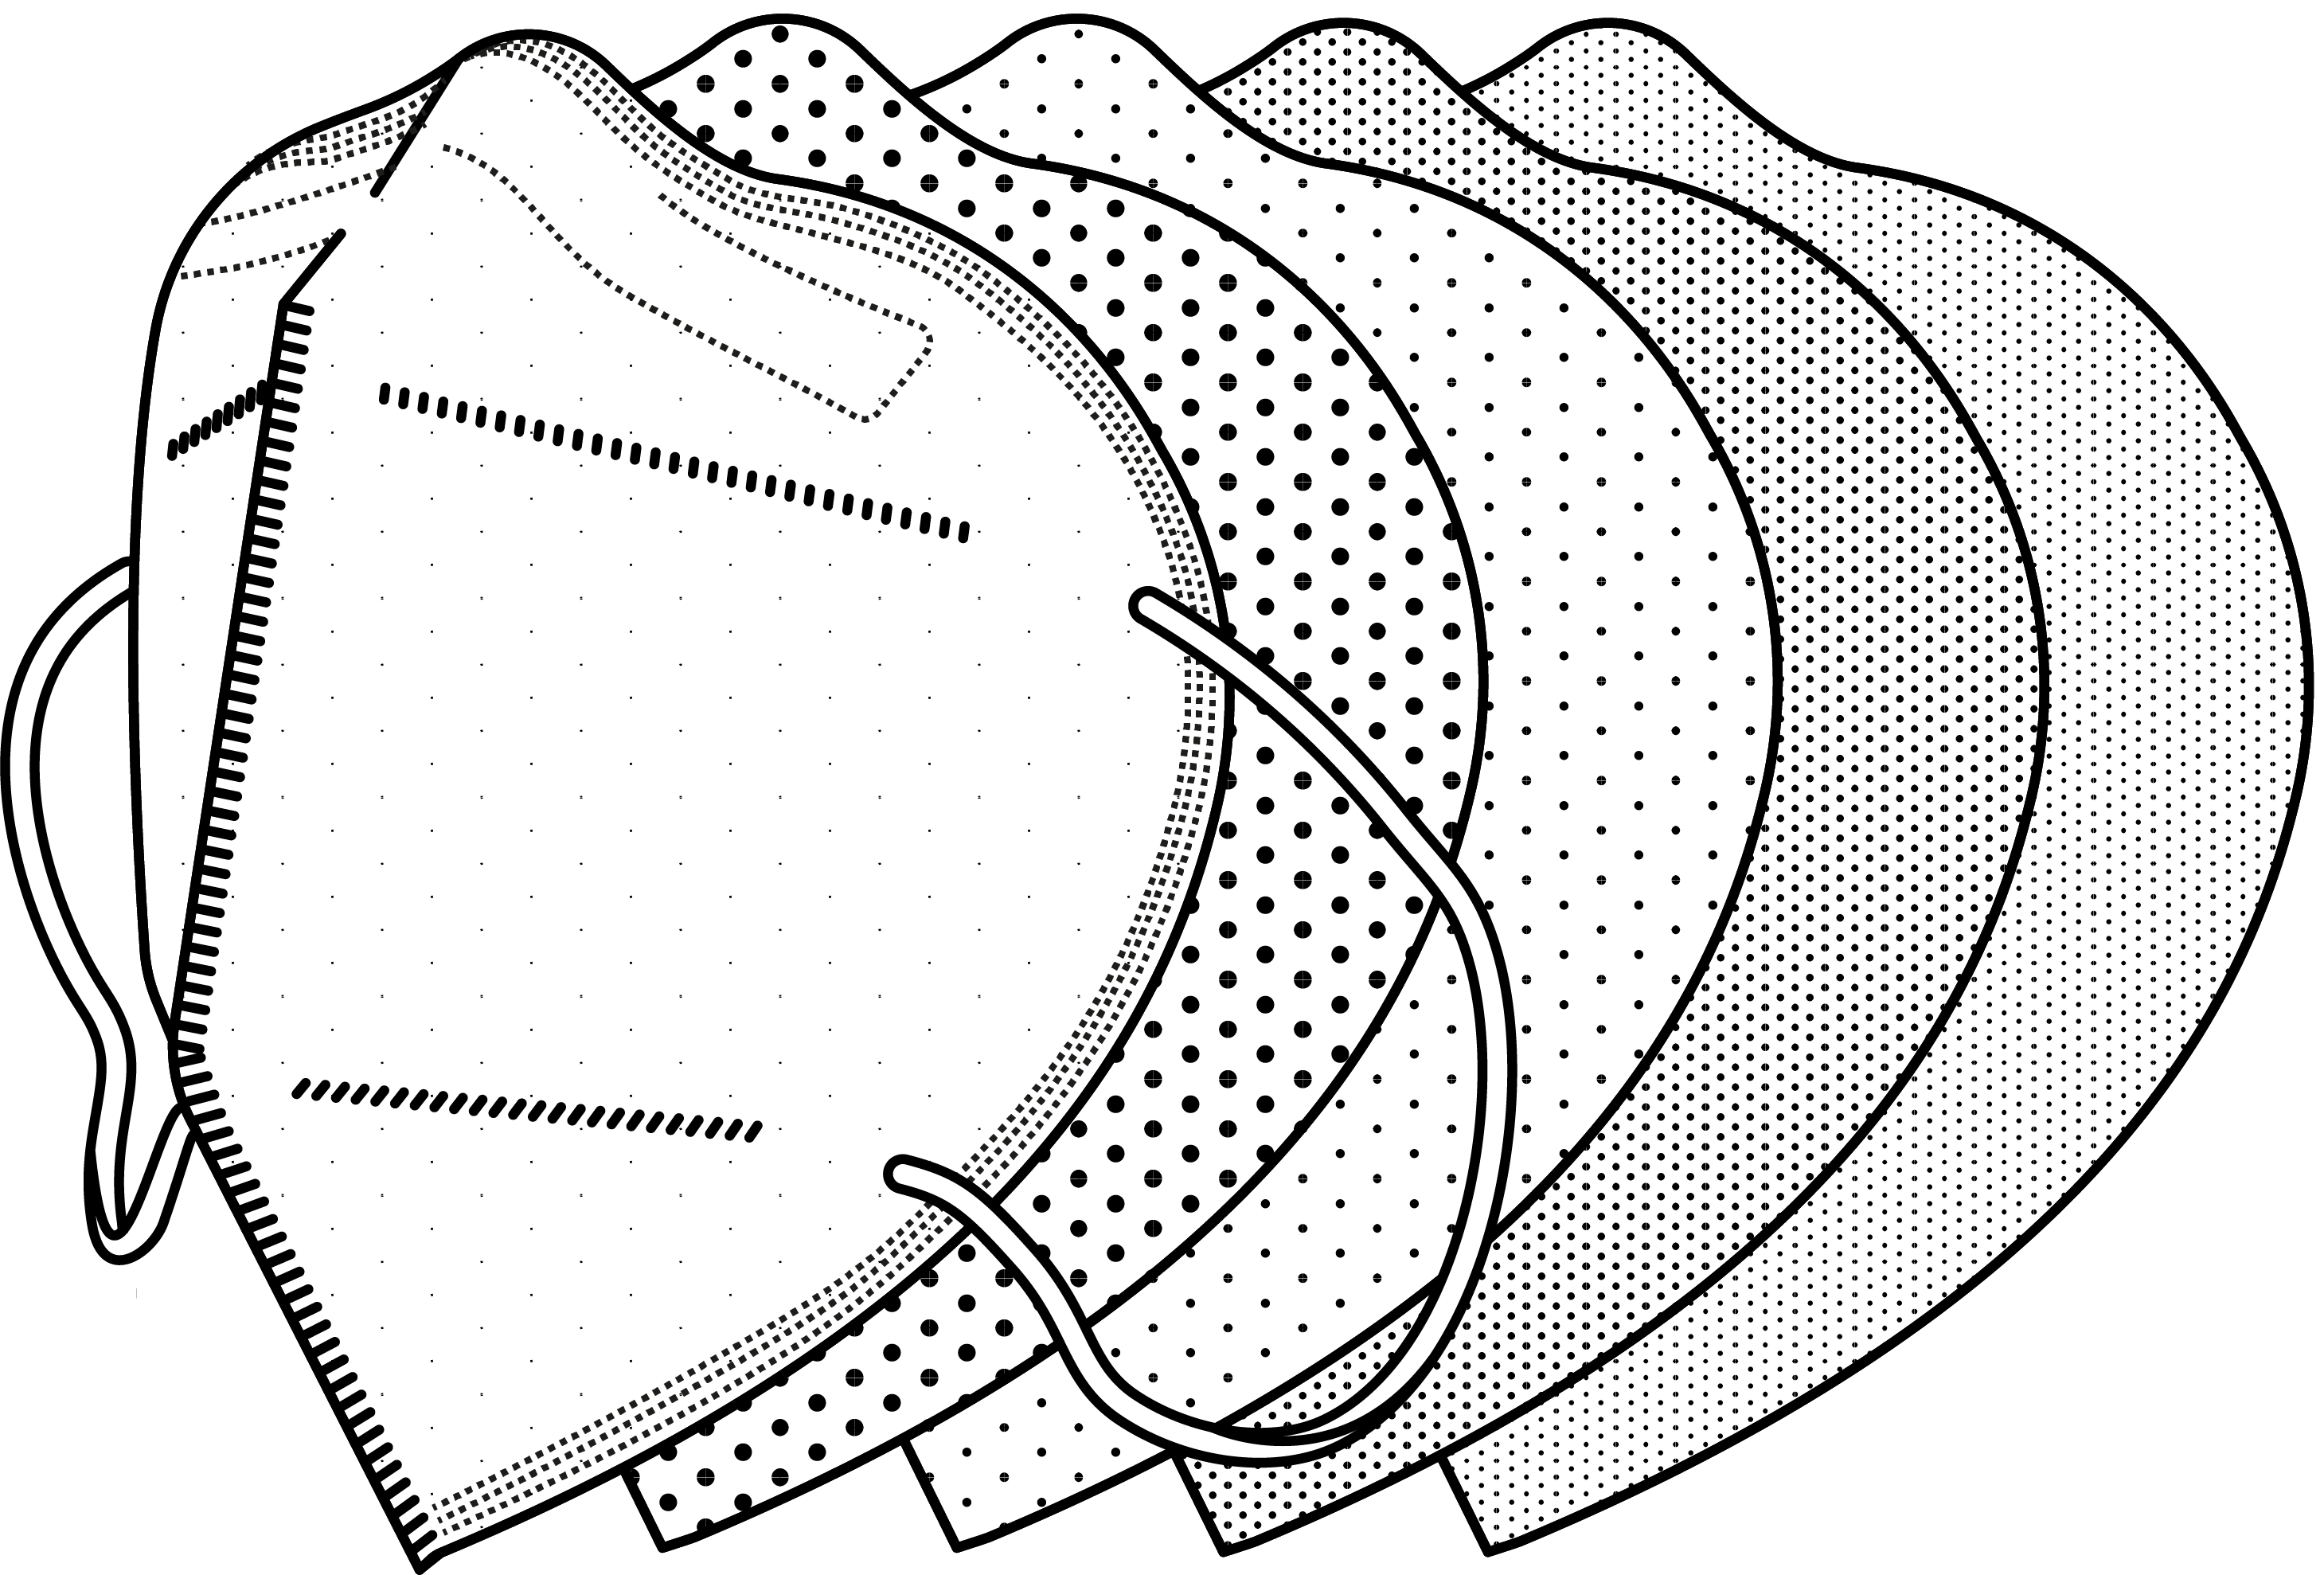 Illustration zu einer 5-schichtigen FFP2 Maske